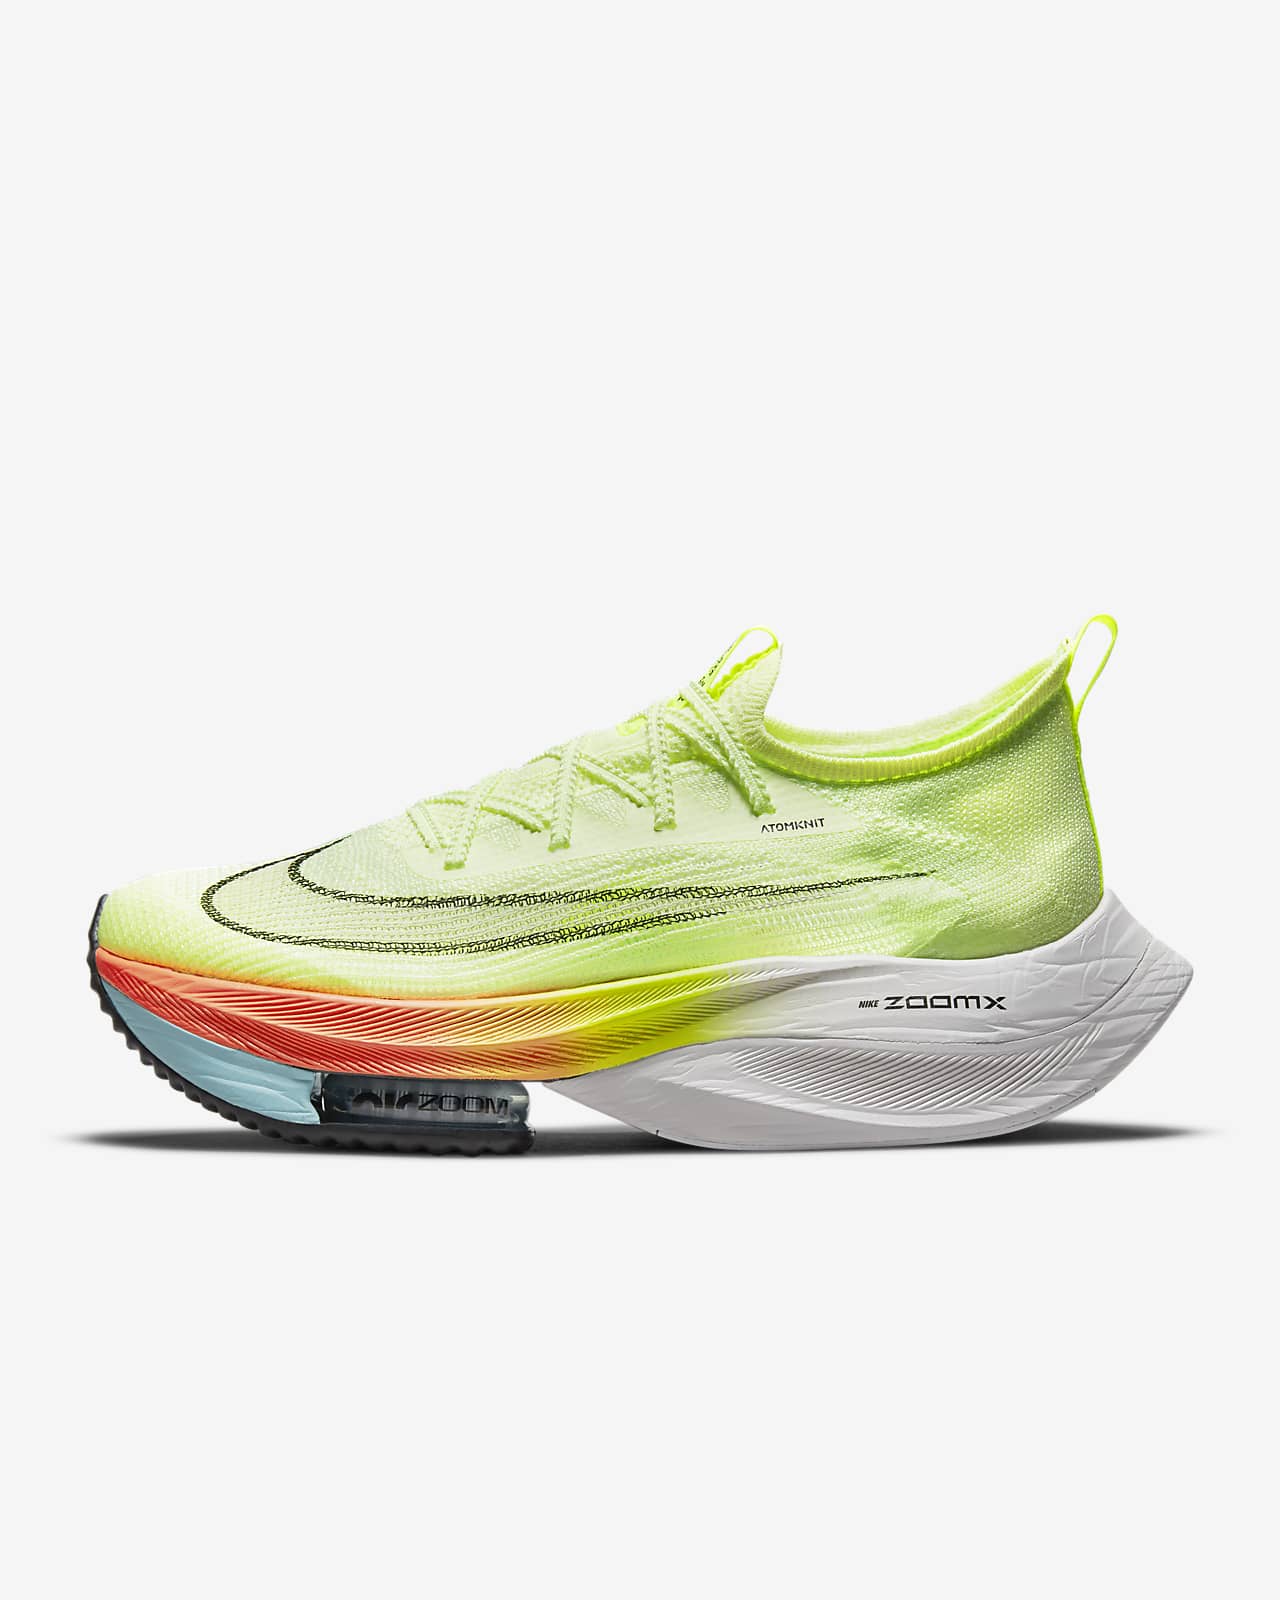 Ανδρικά παπούτσια αγώνων δρόμου Nike Air Zoom Alphafly NEXT% Flyknit